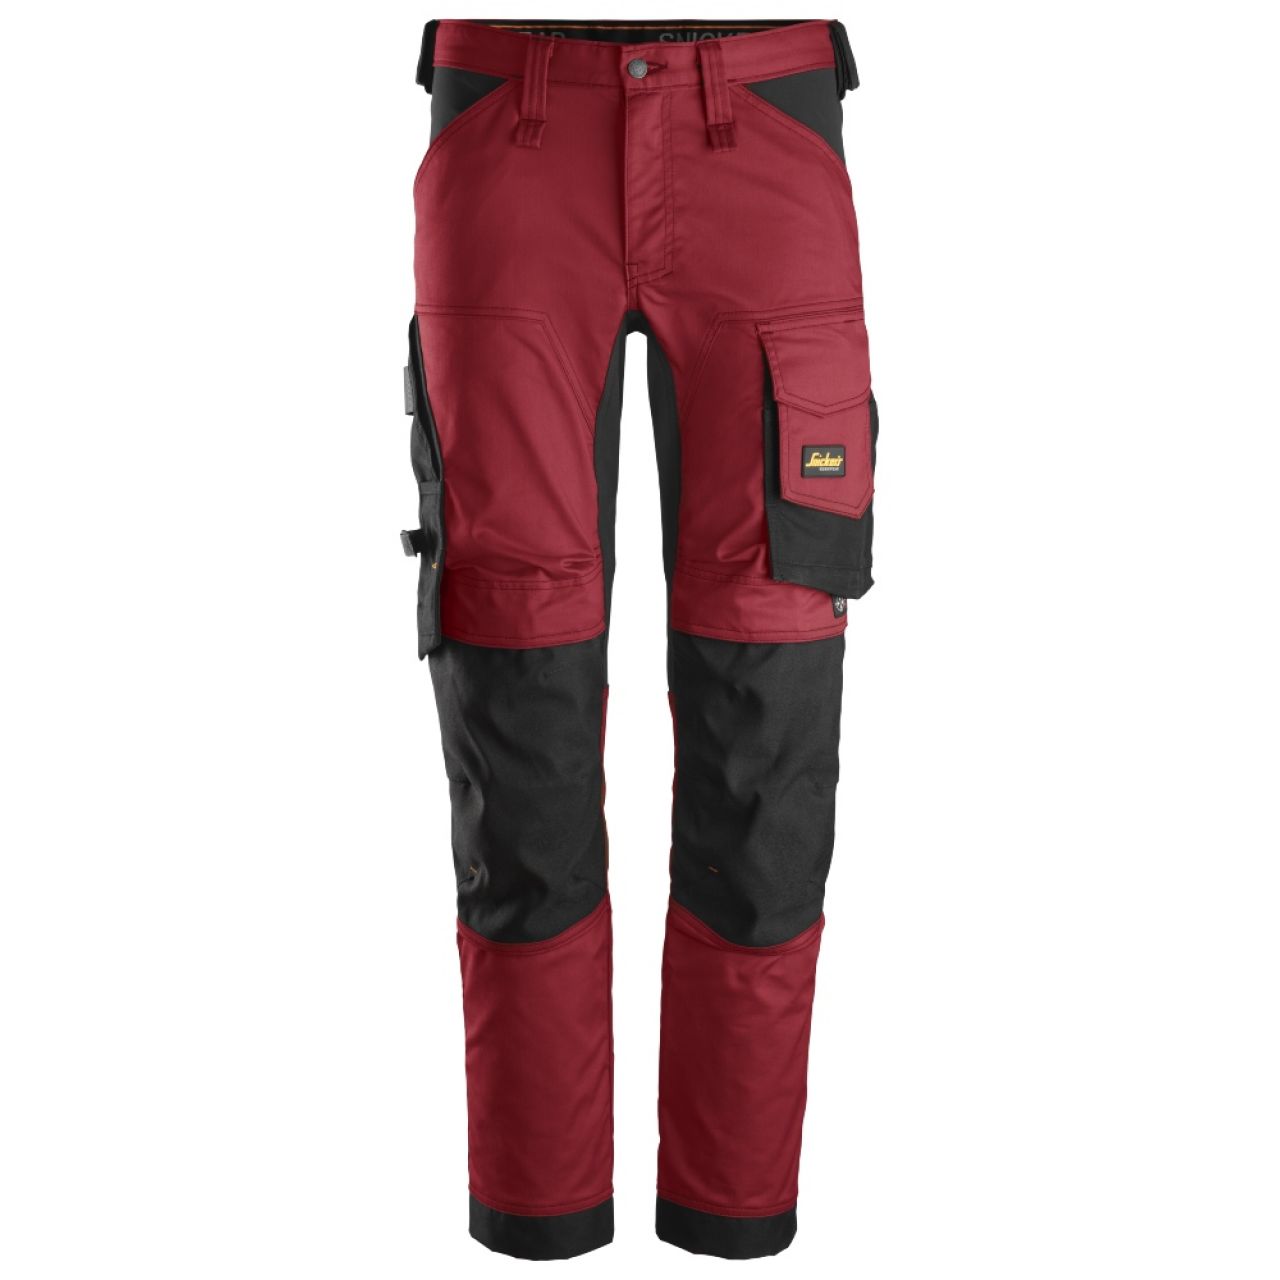 6341 Pantalones largos de trabajo elásticos AllroundWork rojo-negro talla 54